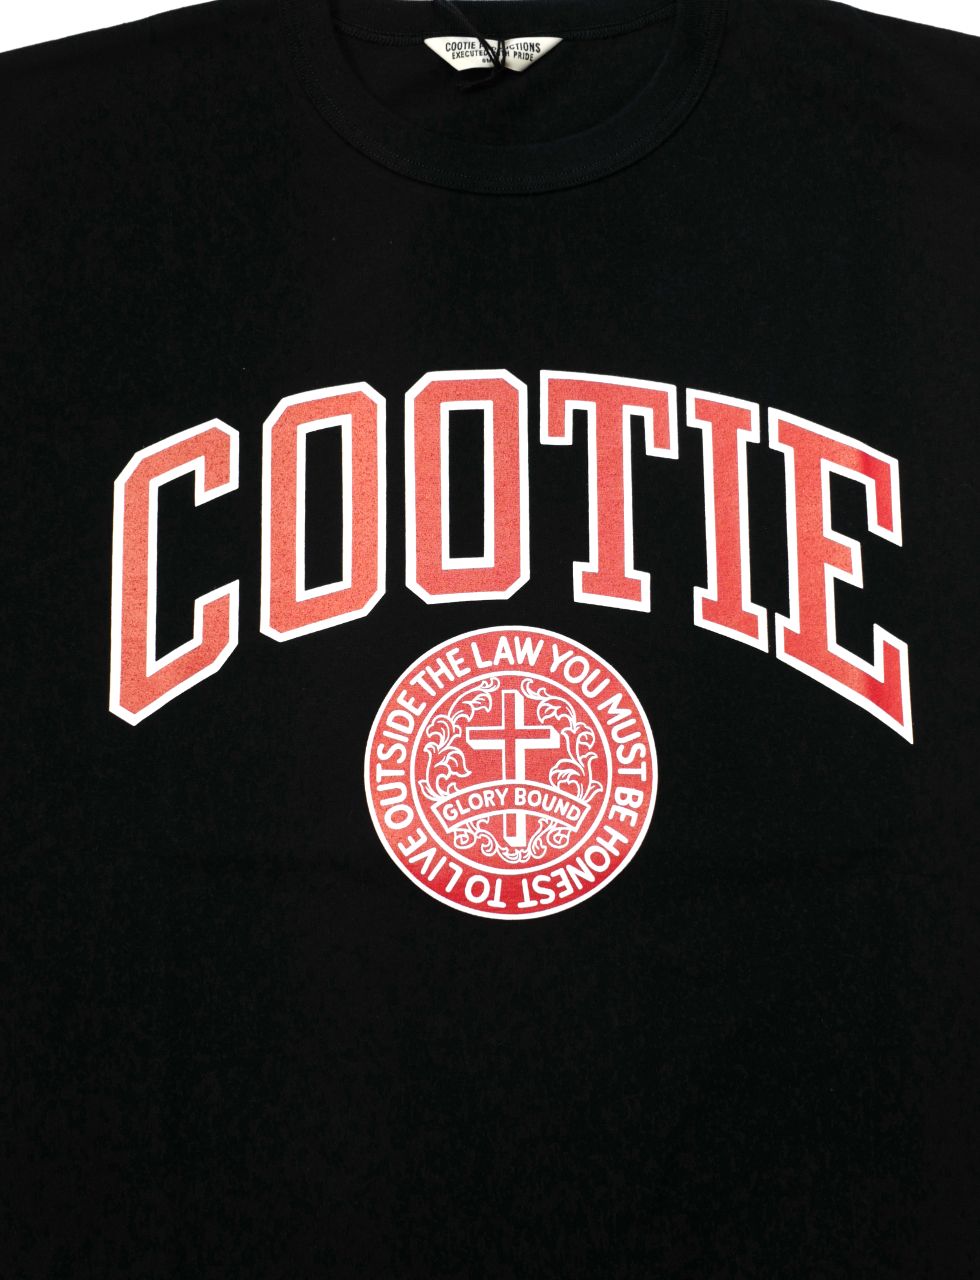 Cootie productions オーバーサイズシャツ　M